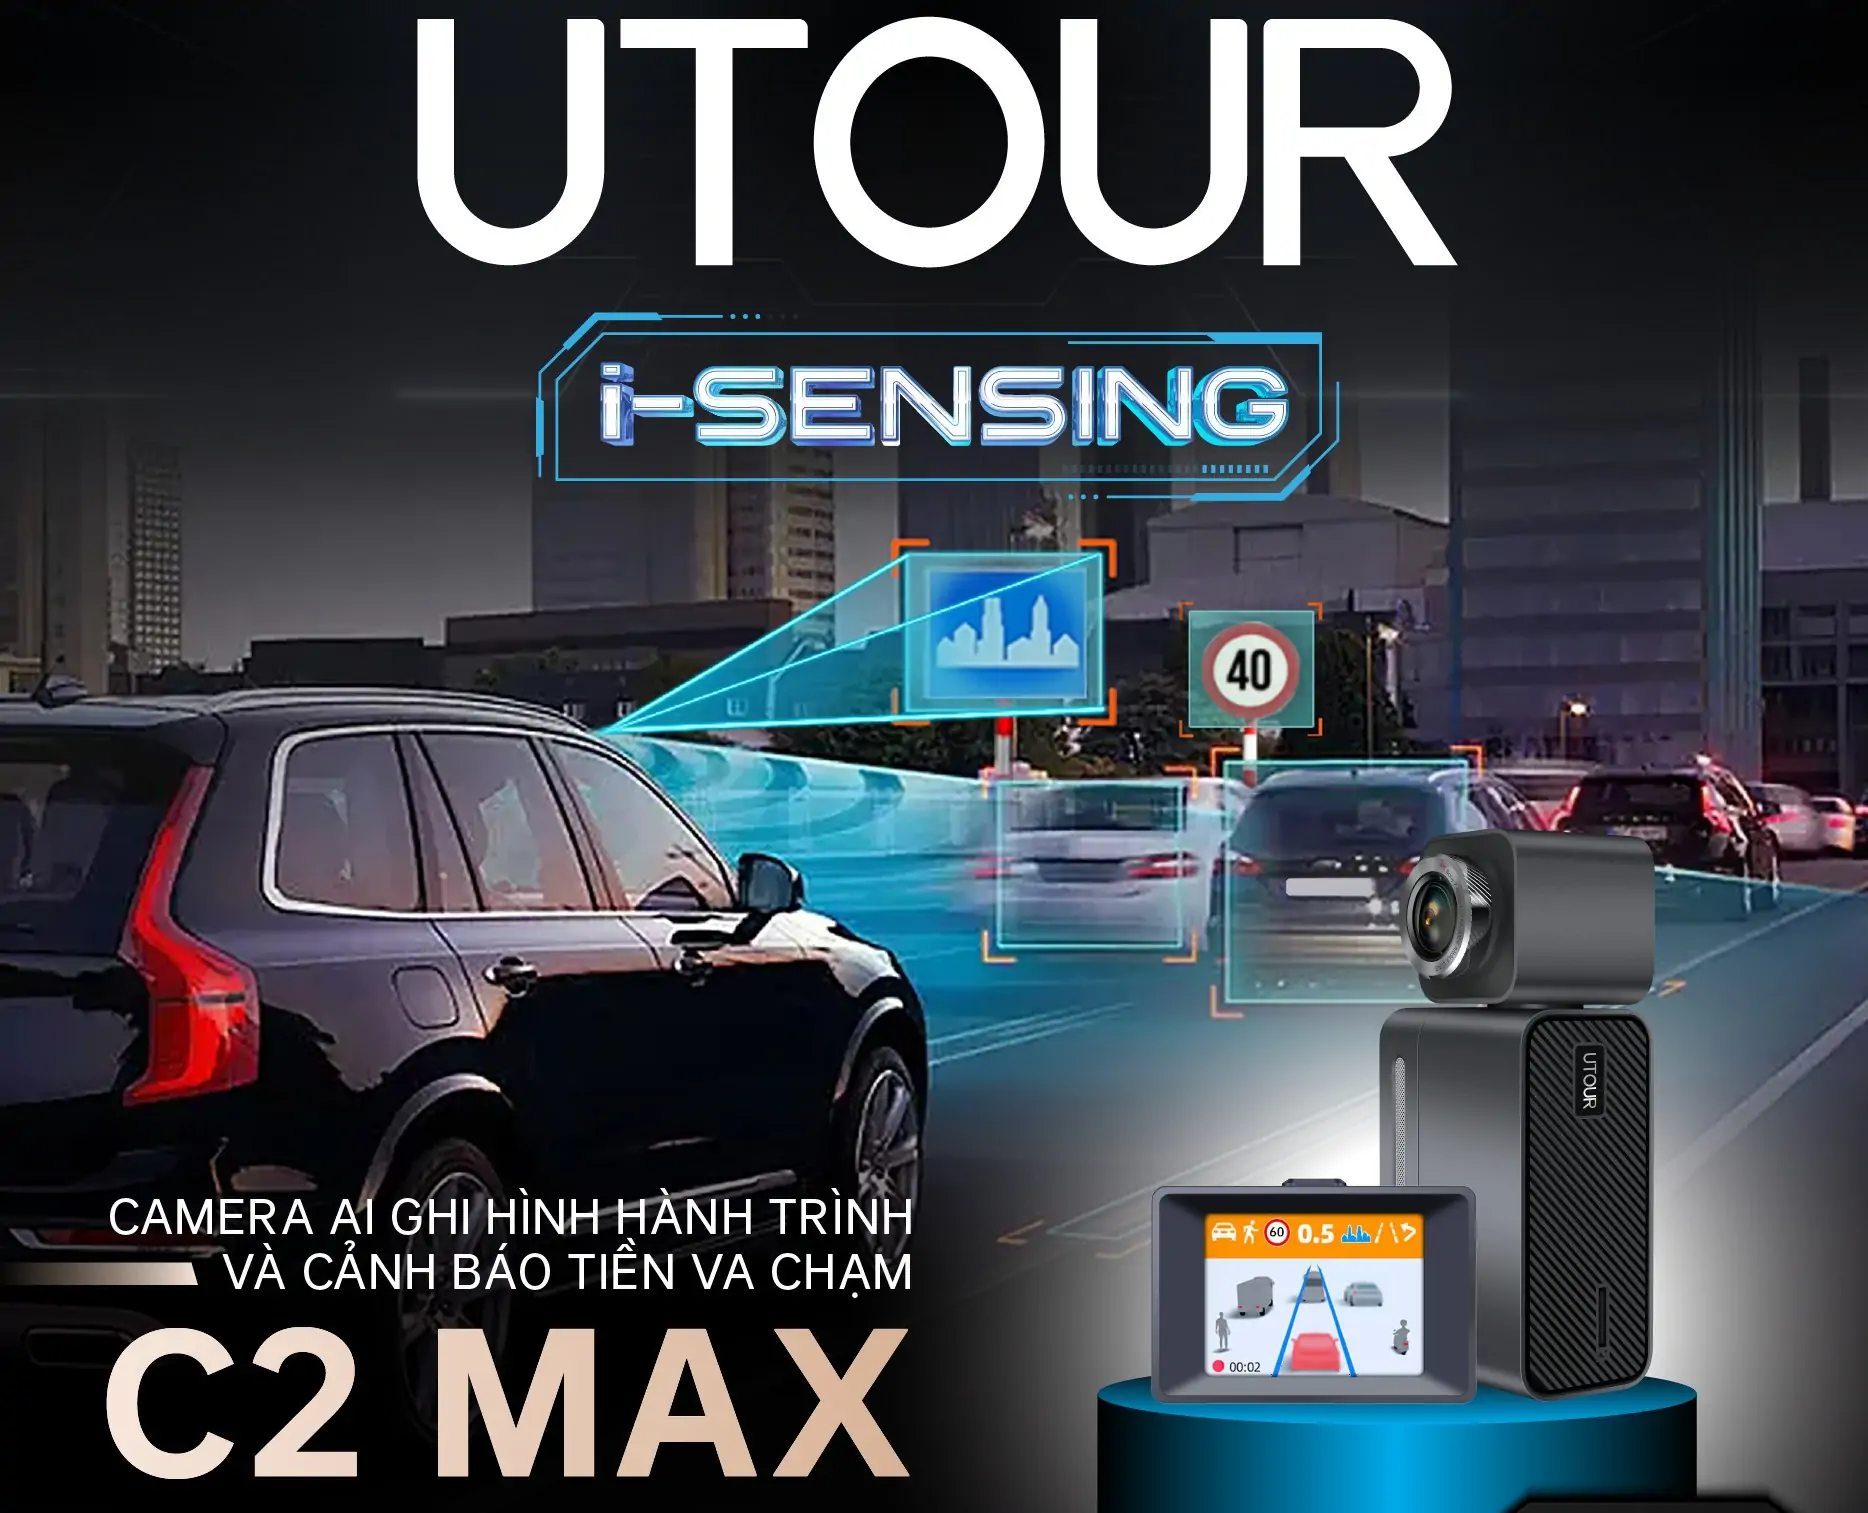 Camera hành trình Utour C2 Max cảnh báo tiền va chạm